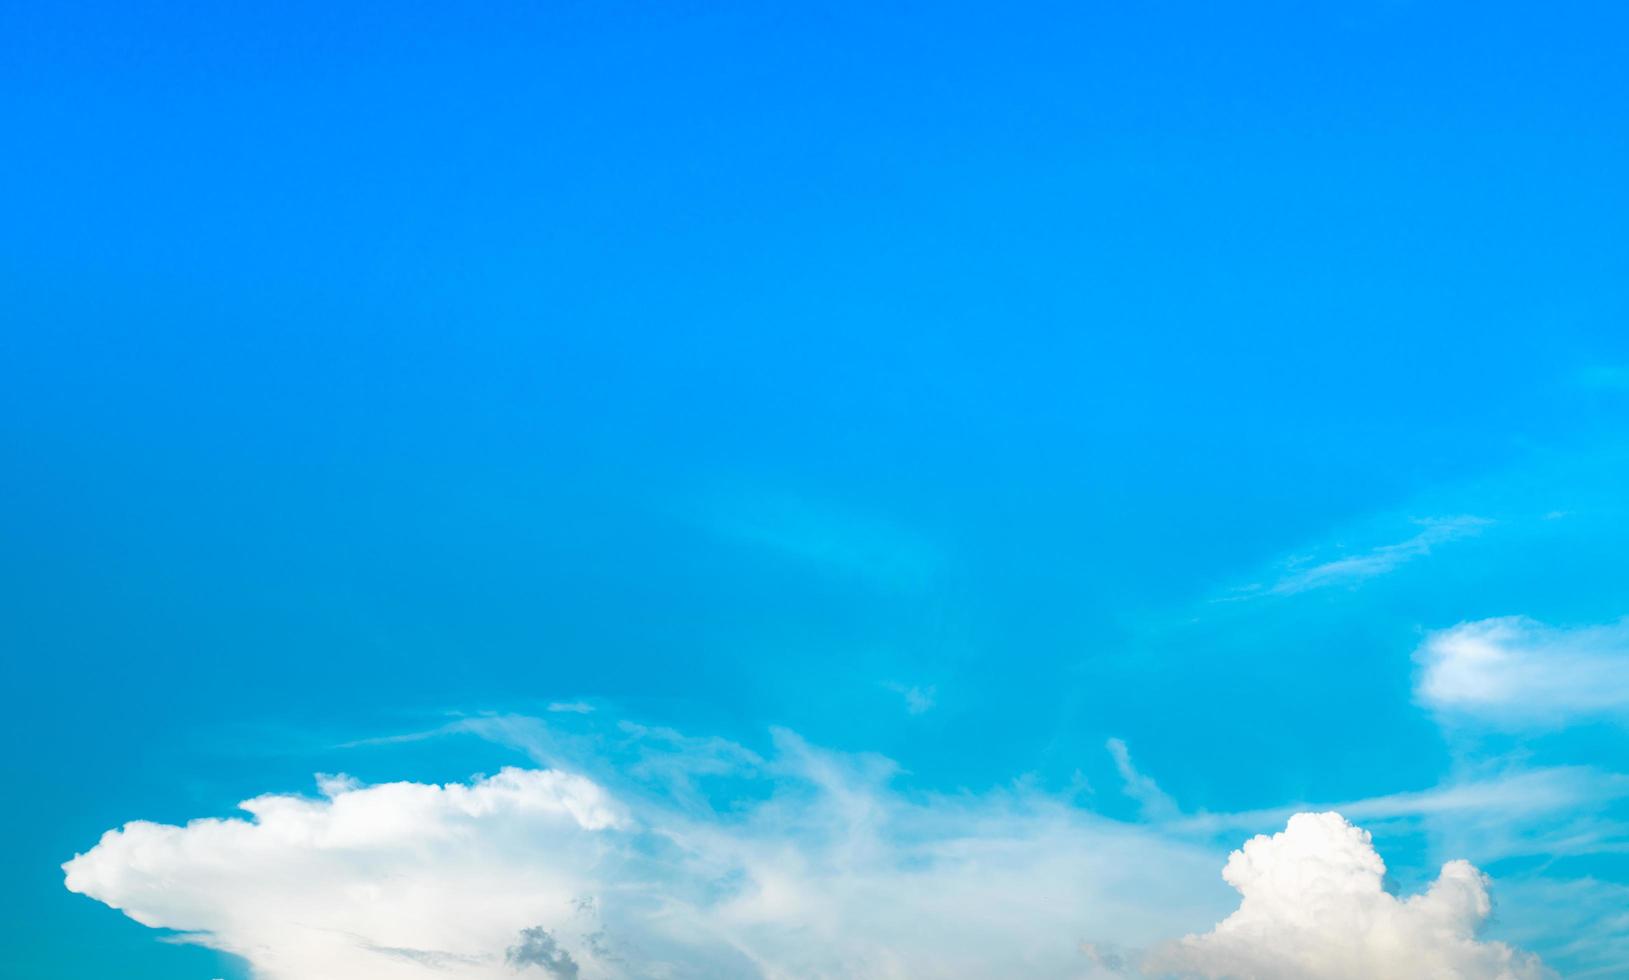 schöner blauer himmel und weißer kumuluswolkenhintergrund. hintergrund für frieden, sommer, heller tag. verwenden sie für fröhliche stimmung, spaß und urlaubstag auf sommerhintergrund foto